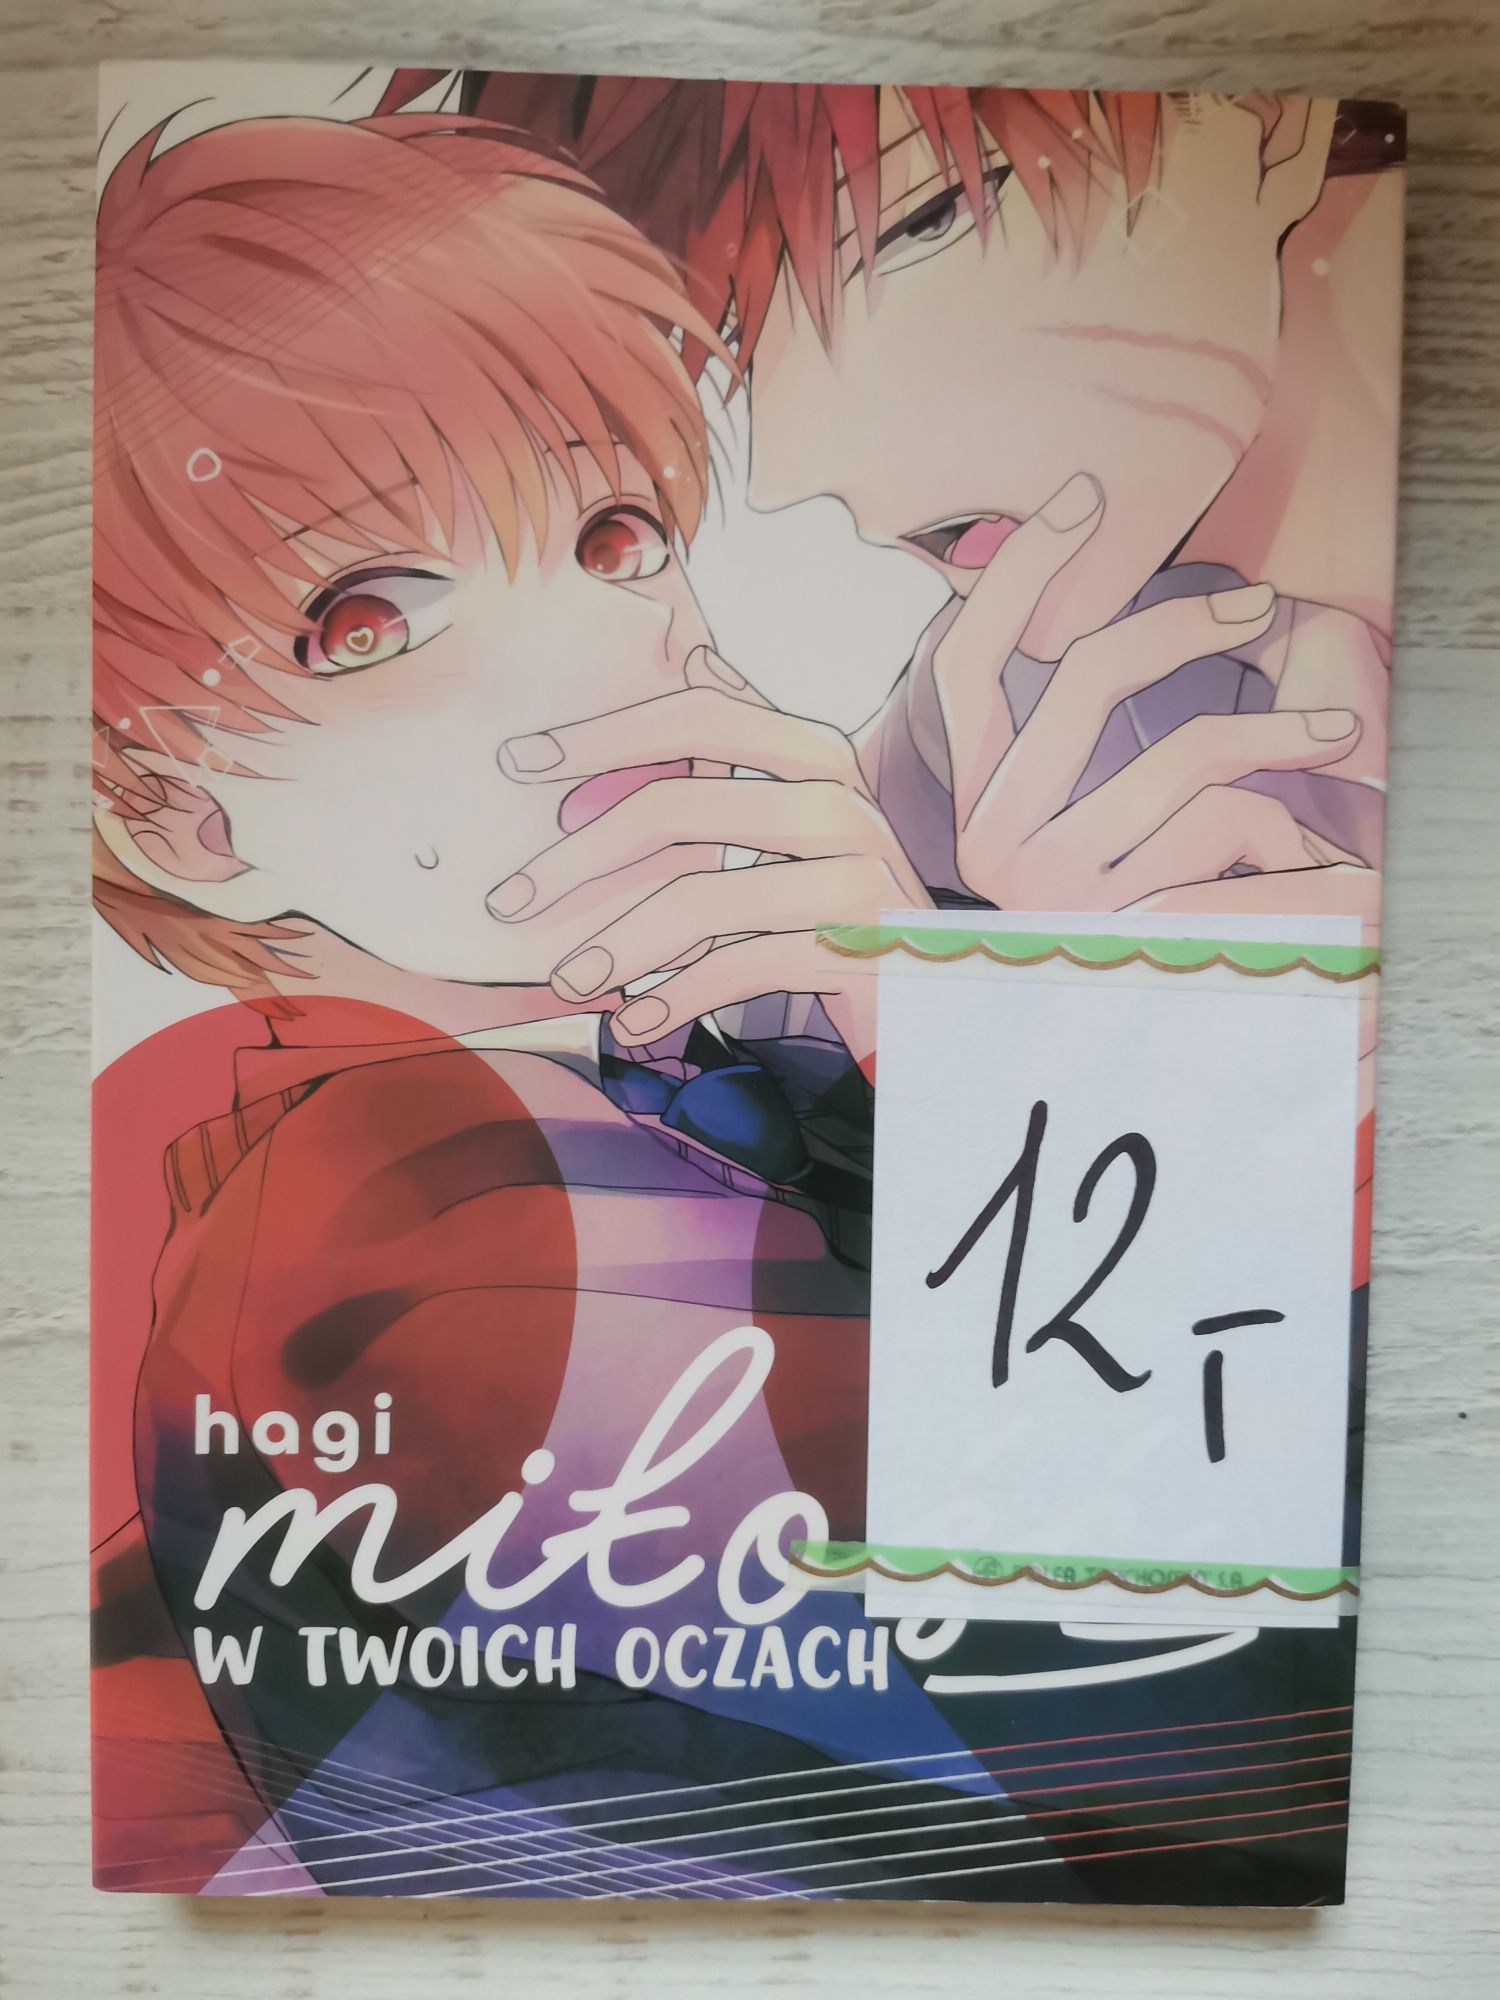 Manga "Miłość w twoich oczach"